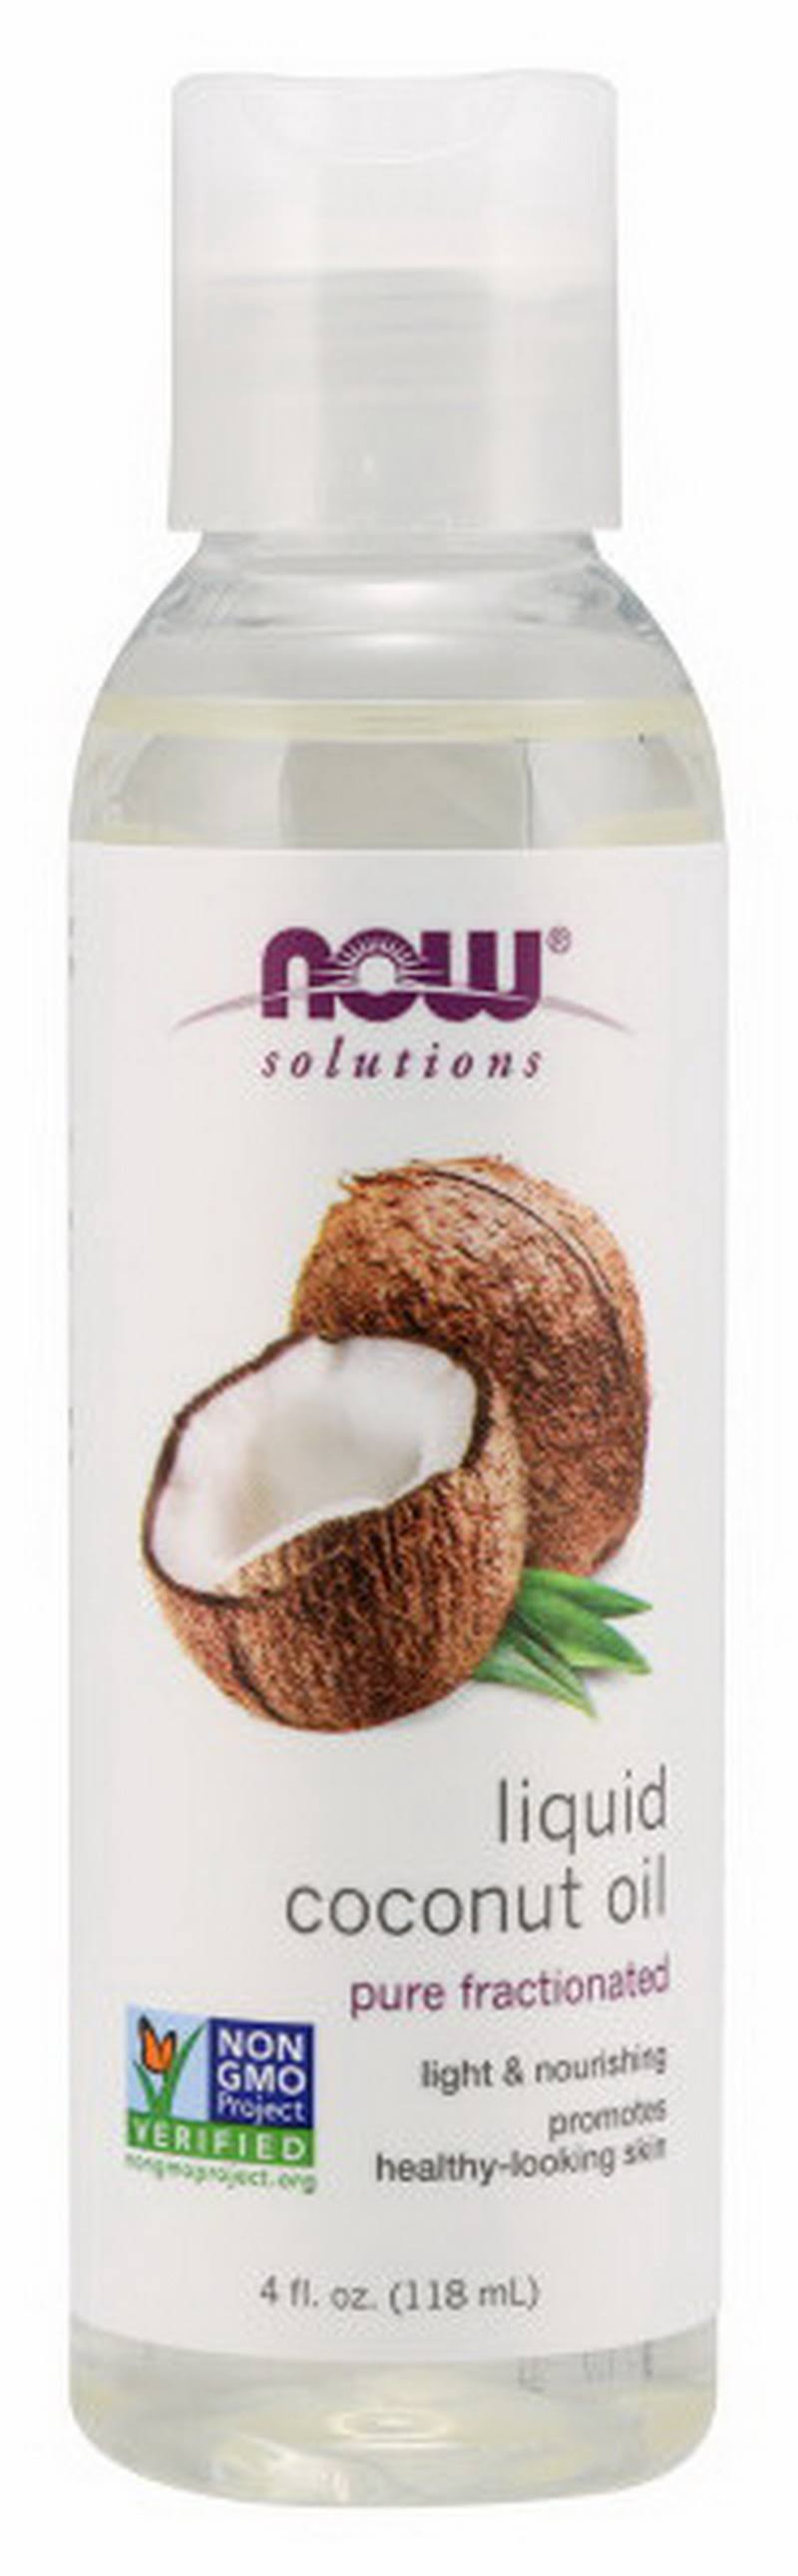 Now Liquid Coconut Oil 4 fl oz